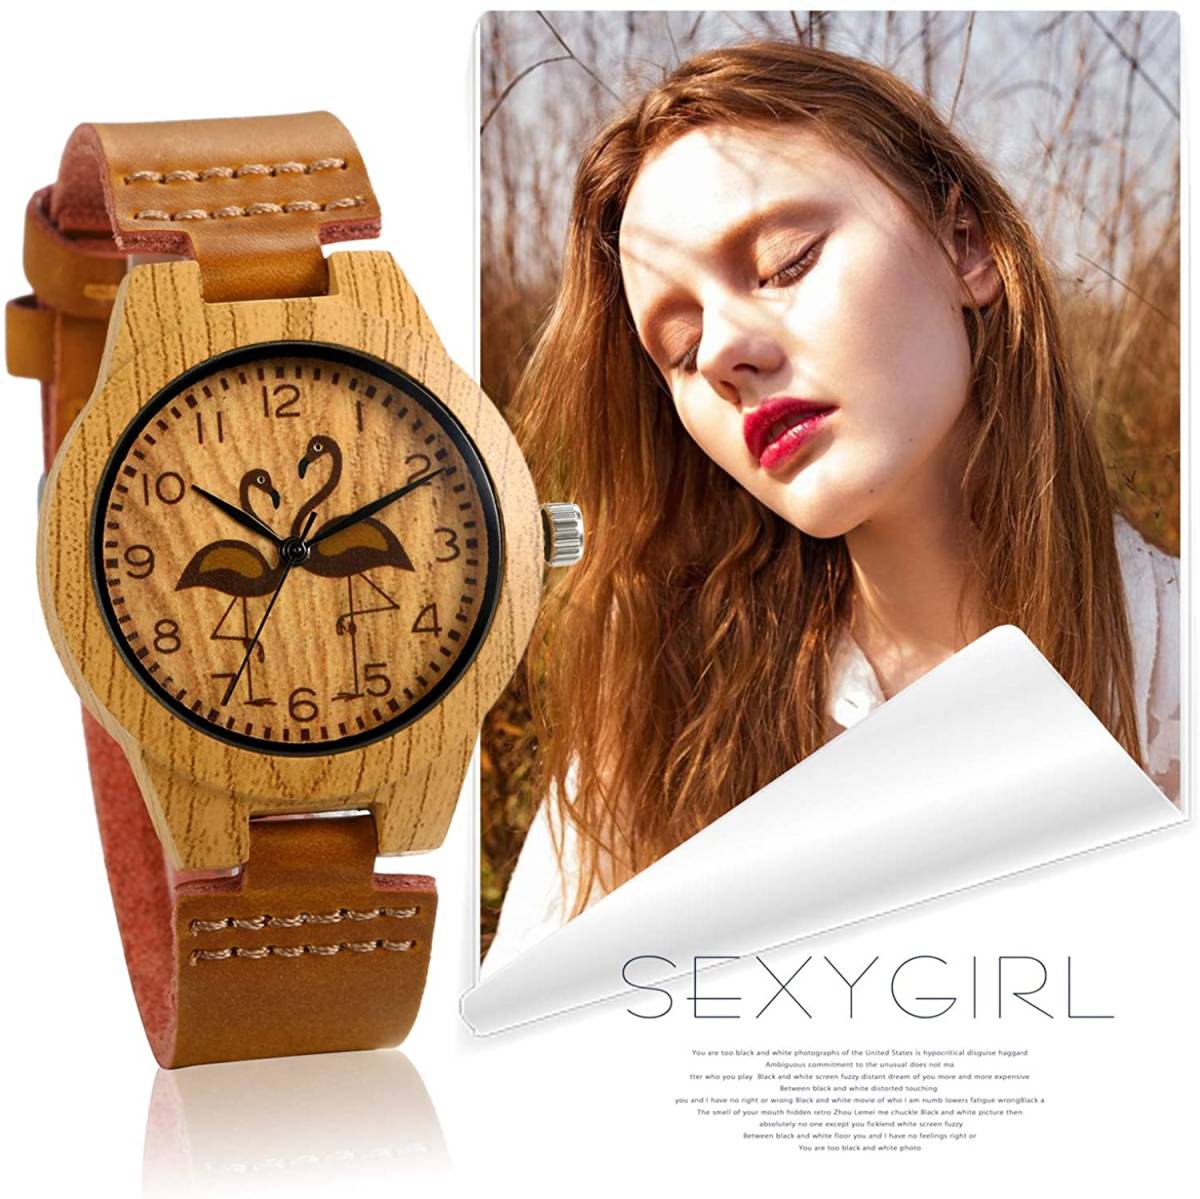    ... хороший  дизайн      наручные часы   кварцевый   коричневый   легкий (по весу)   водонепроницаемый   женский  ...  повседневный   часы   часы    антиквариат   женщина   подарок 